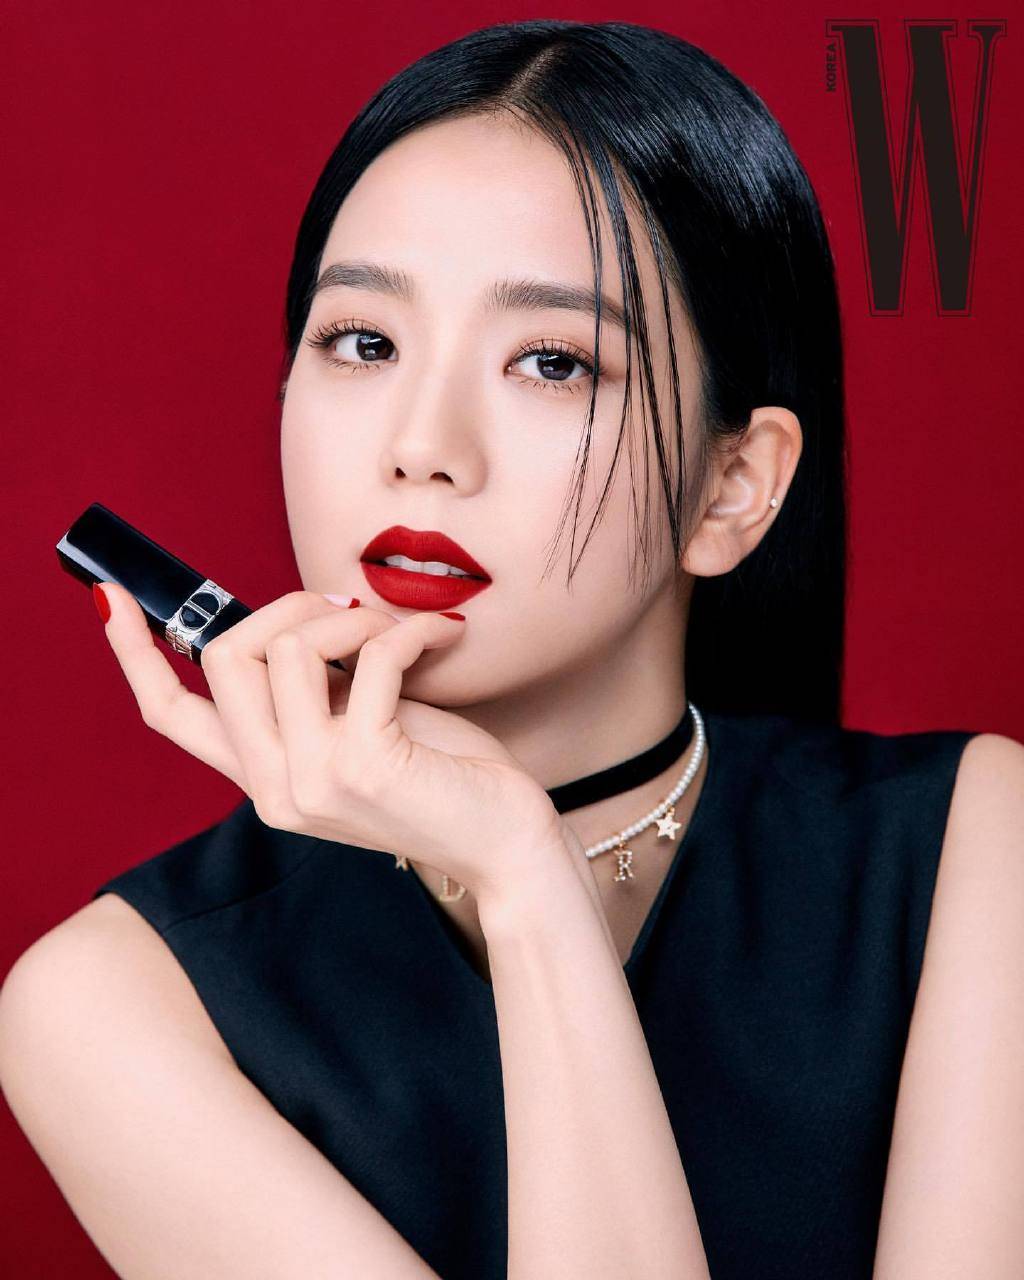 智秀《w korea》画报公开优雅性感的强烈红唇